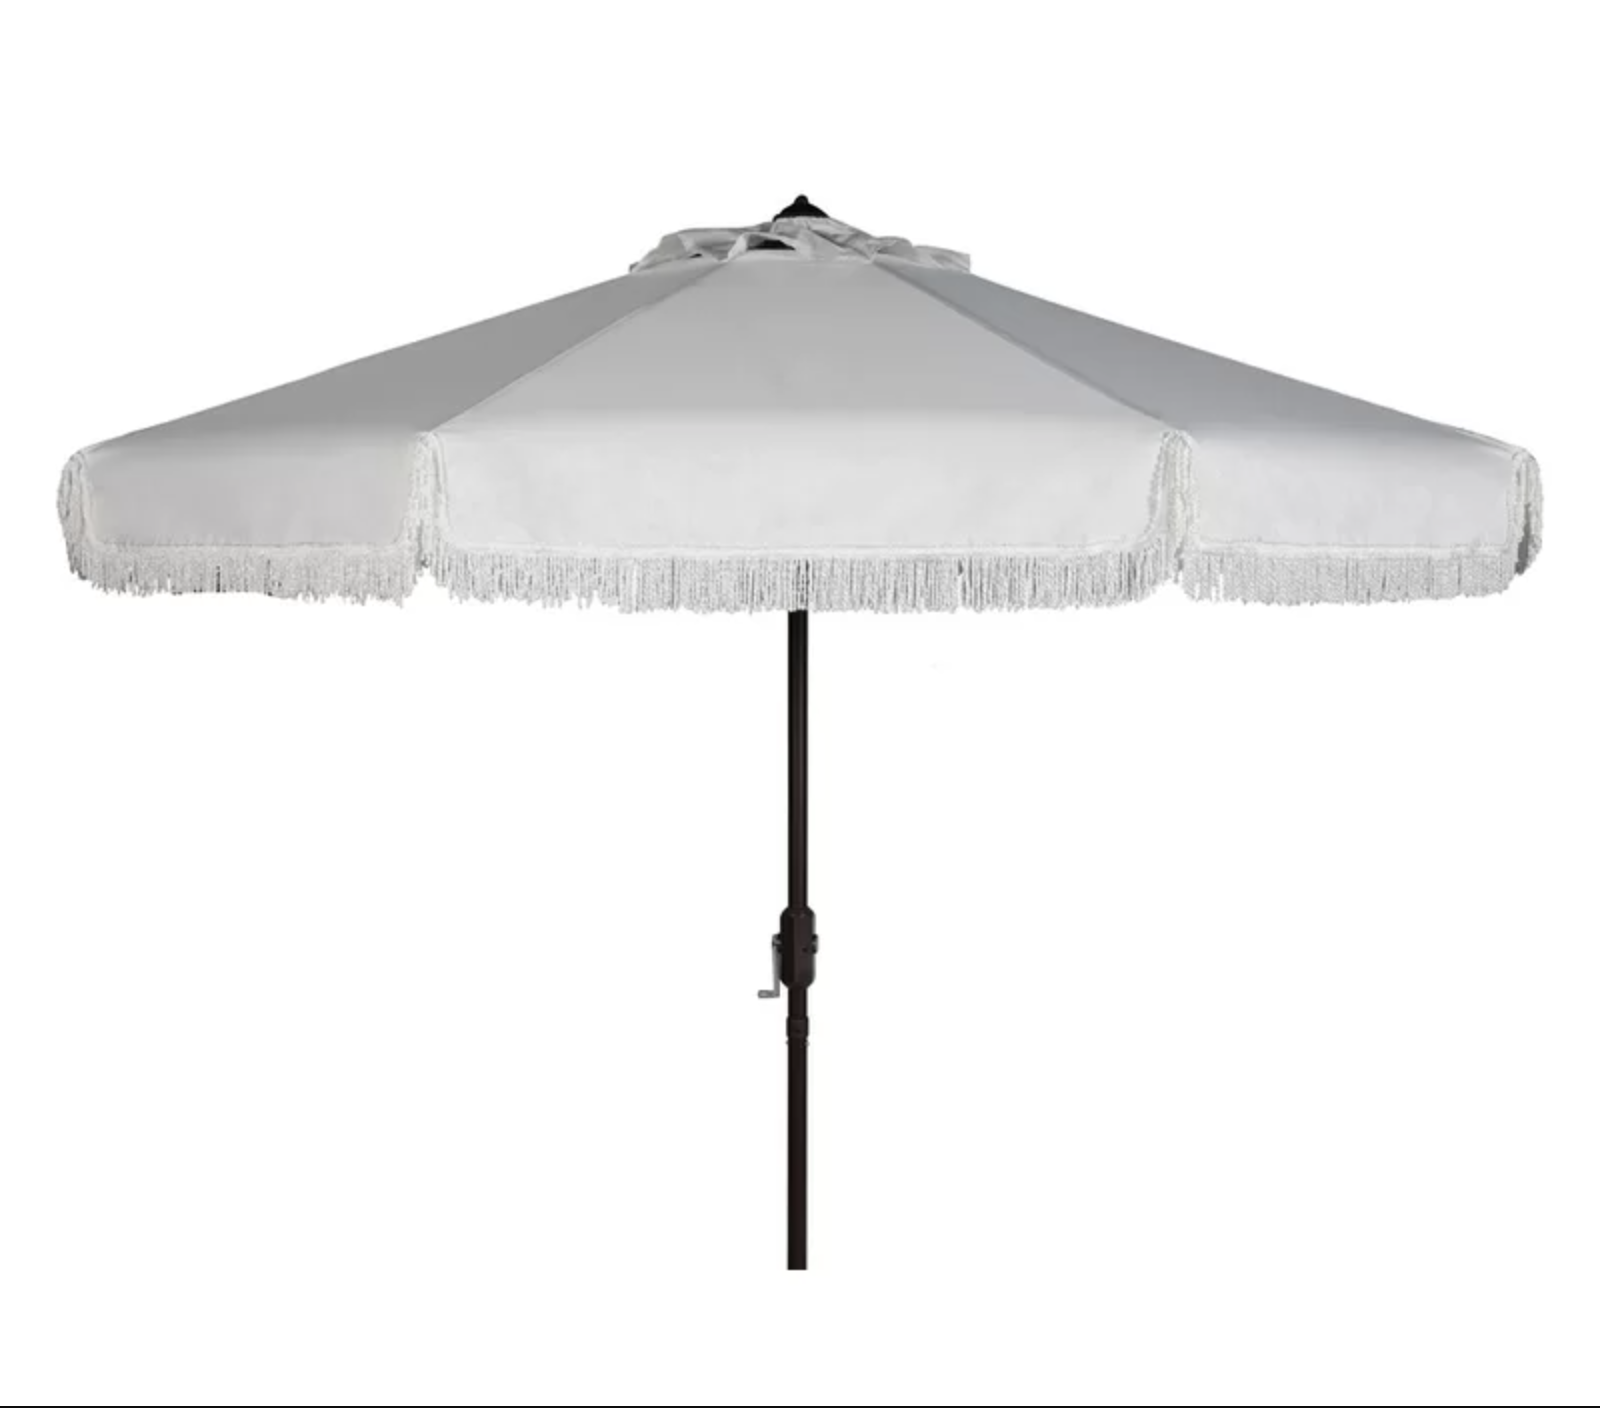 Wacker Market Umbrella